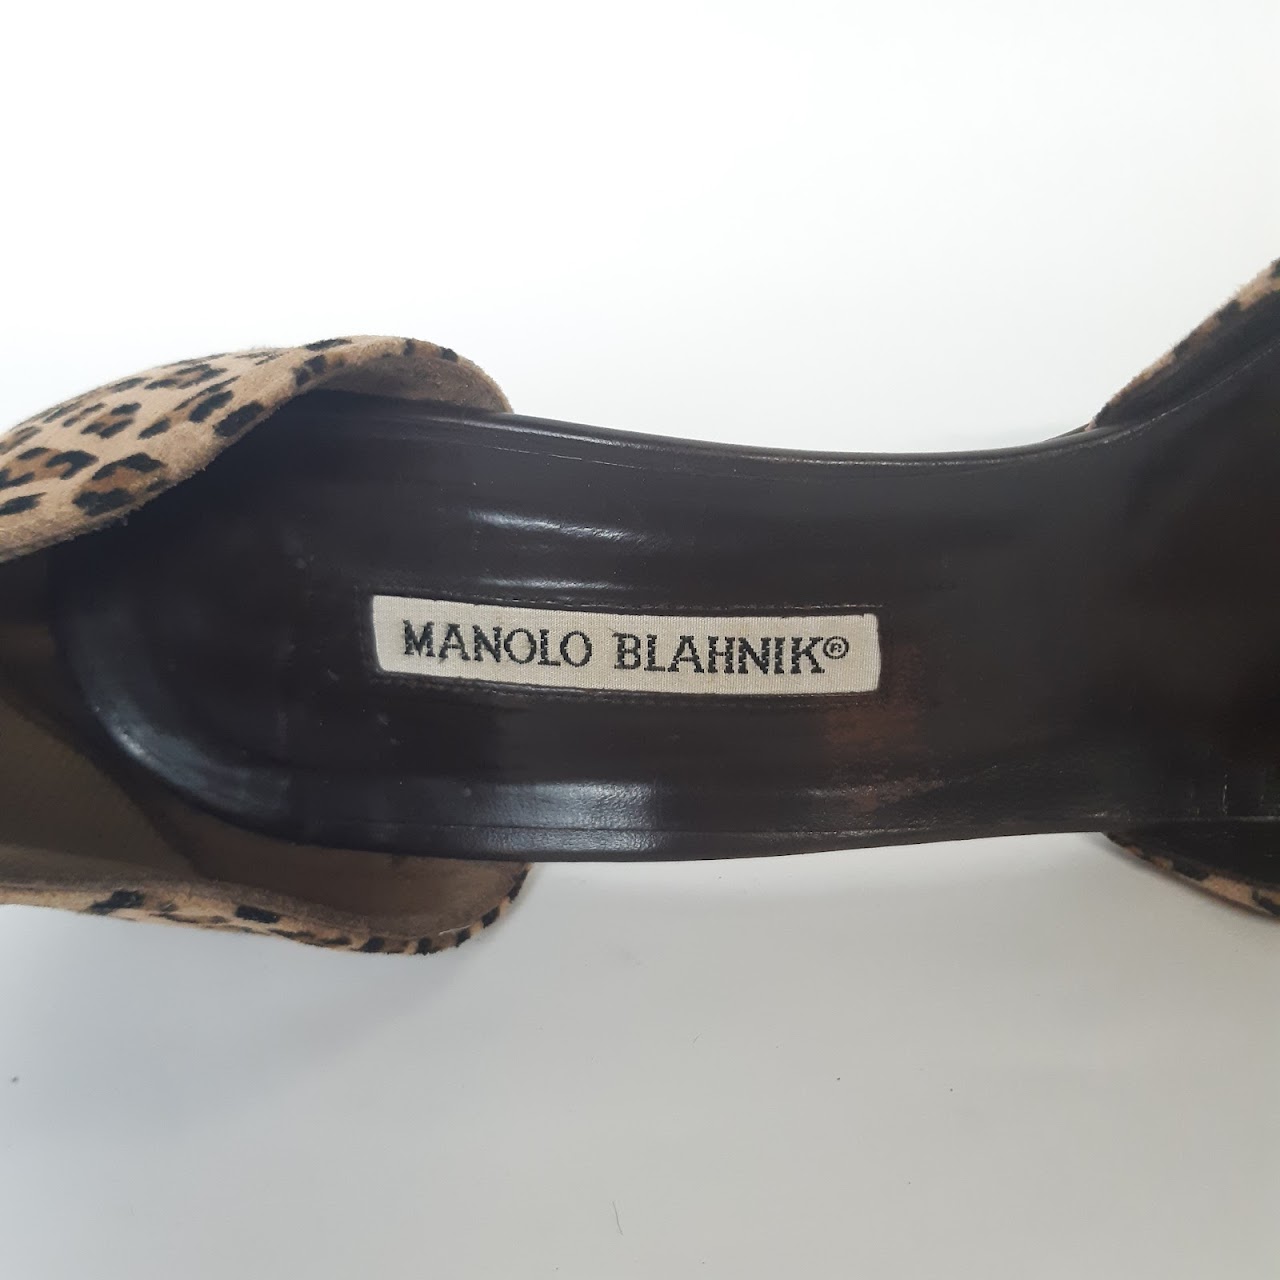 Manolo Blahnik Suede Leopard Print Pumps